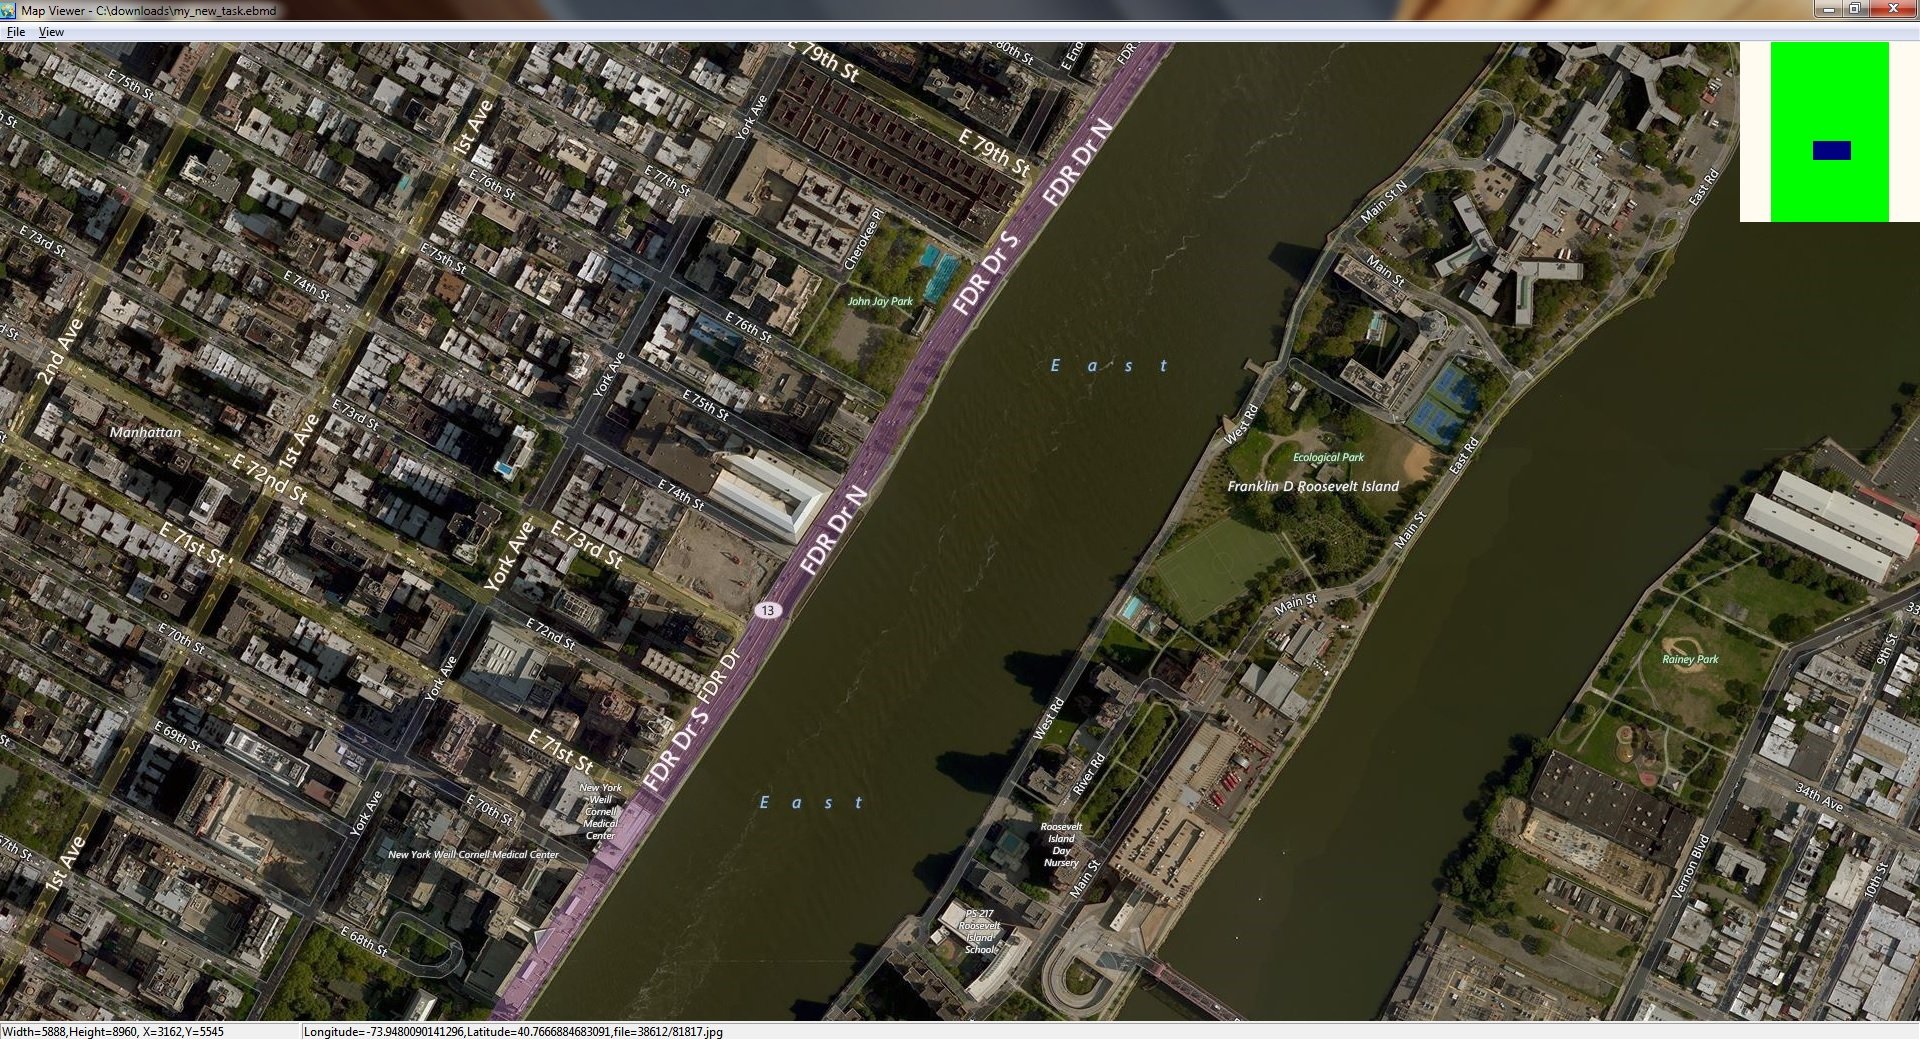 Download AllMapSoft Bing Maps Downloader 7.502 - SoftArchive